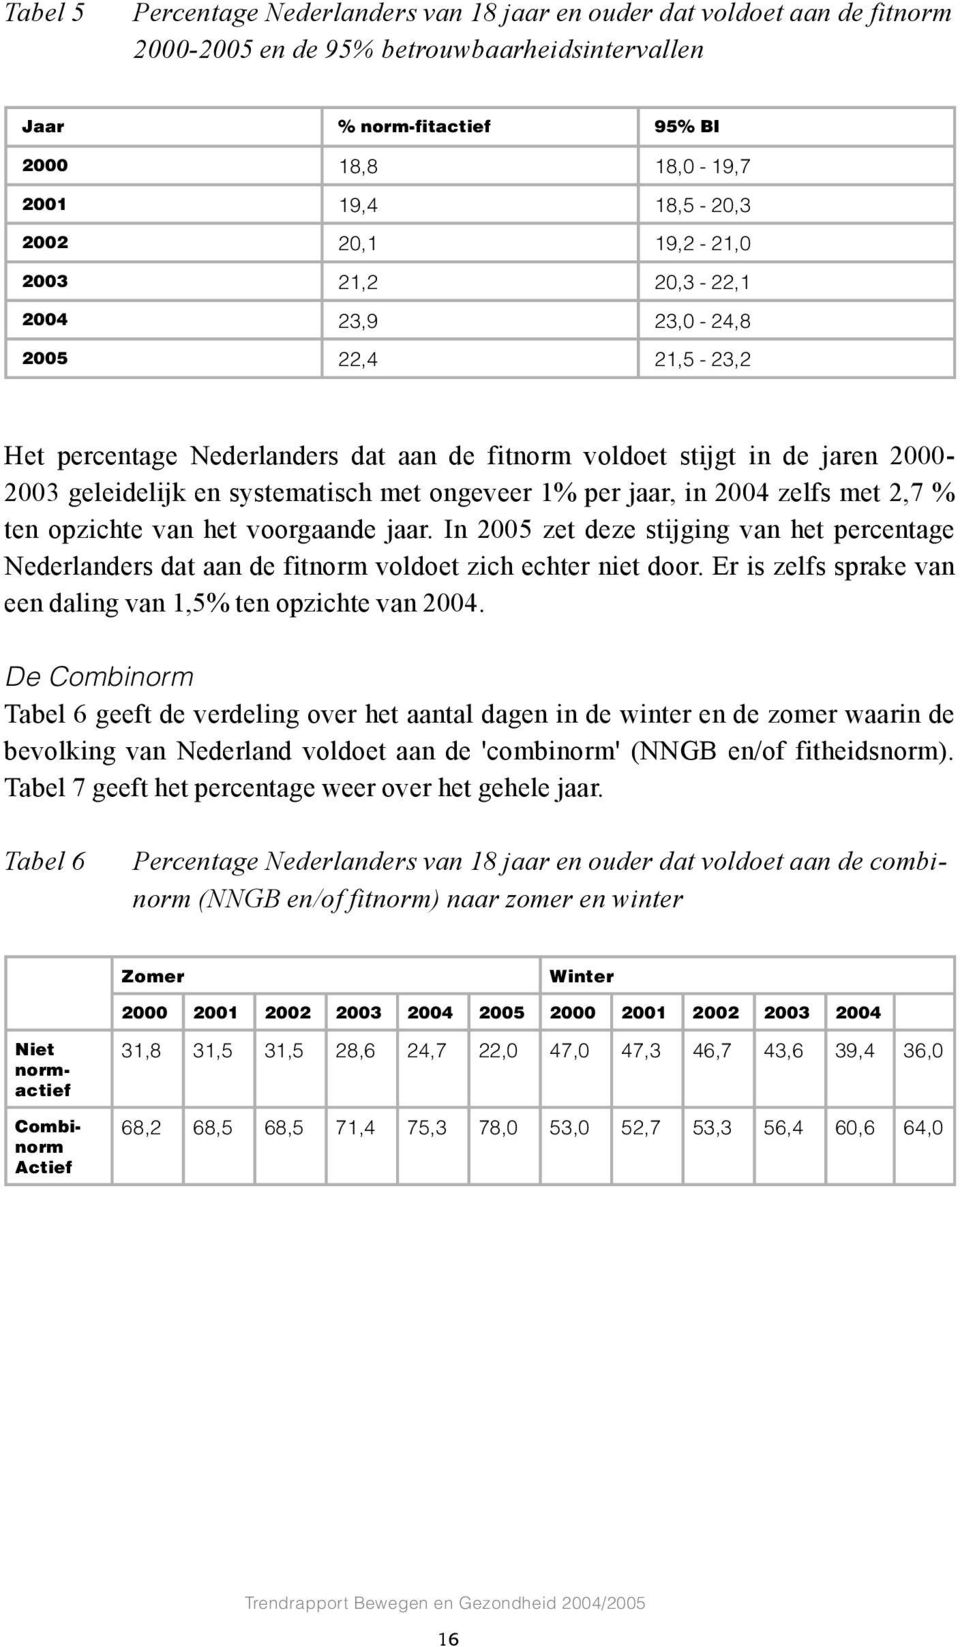 ongeveer 1% per jaar, in 2004 zelfs met 2,7 % ten opzichte van het voorgaande jaar. In 2005 zet deze stijging van het percentage Nederlanders dat aan de fitnorm voldoet zich echter niet door.